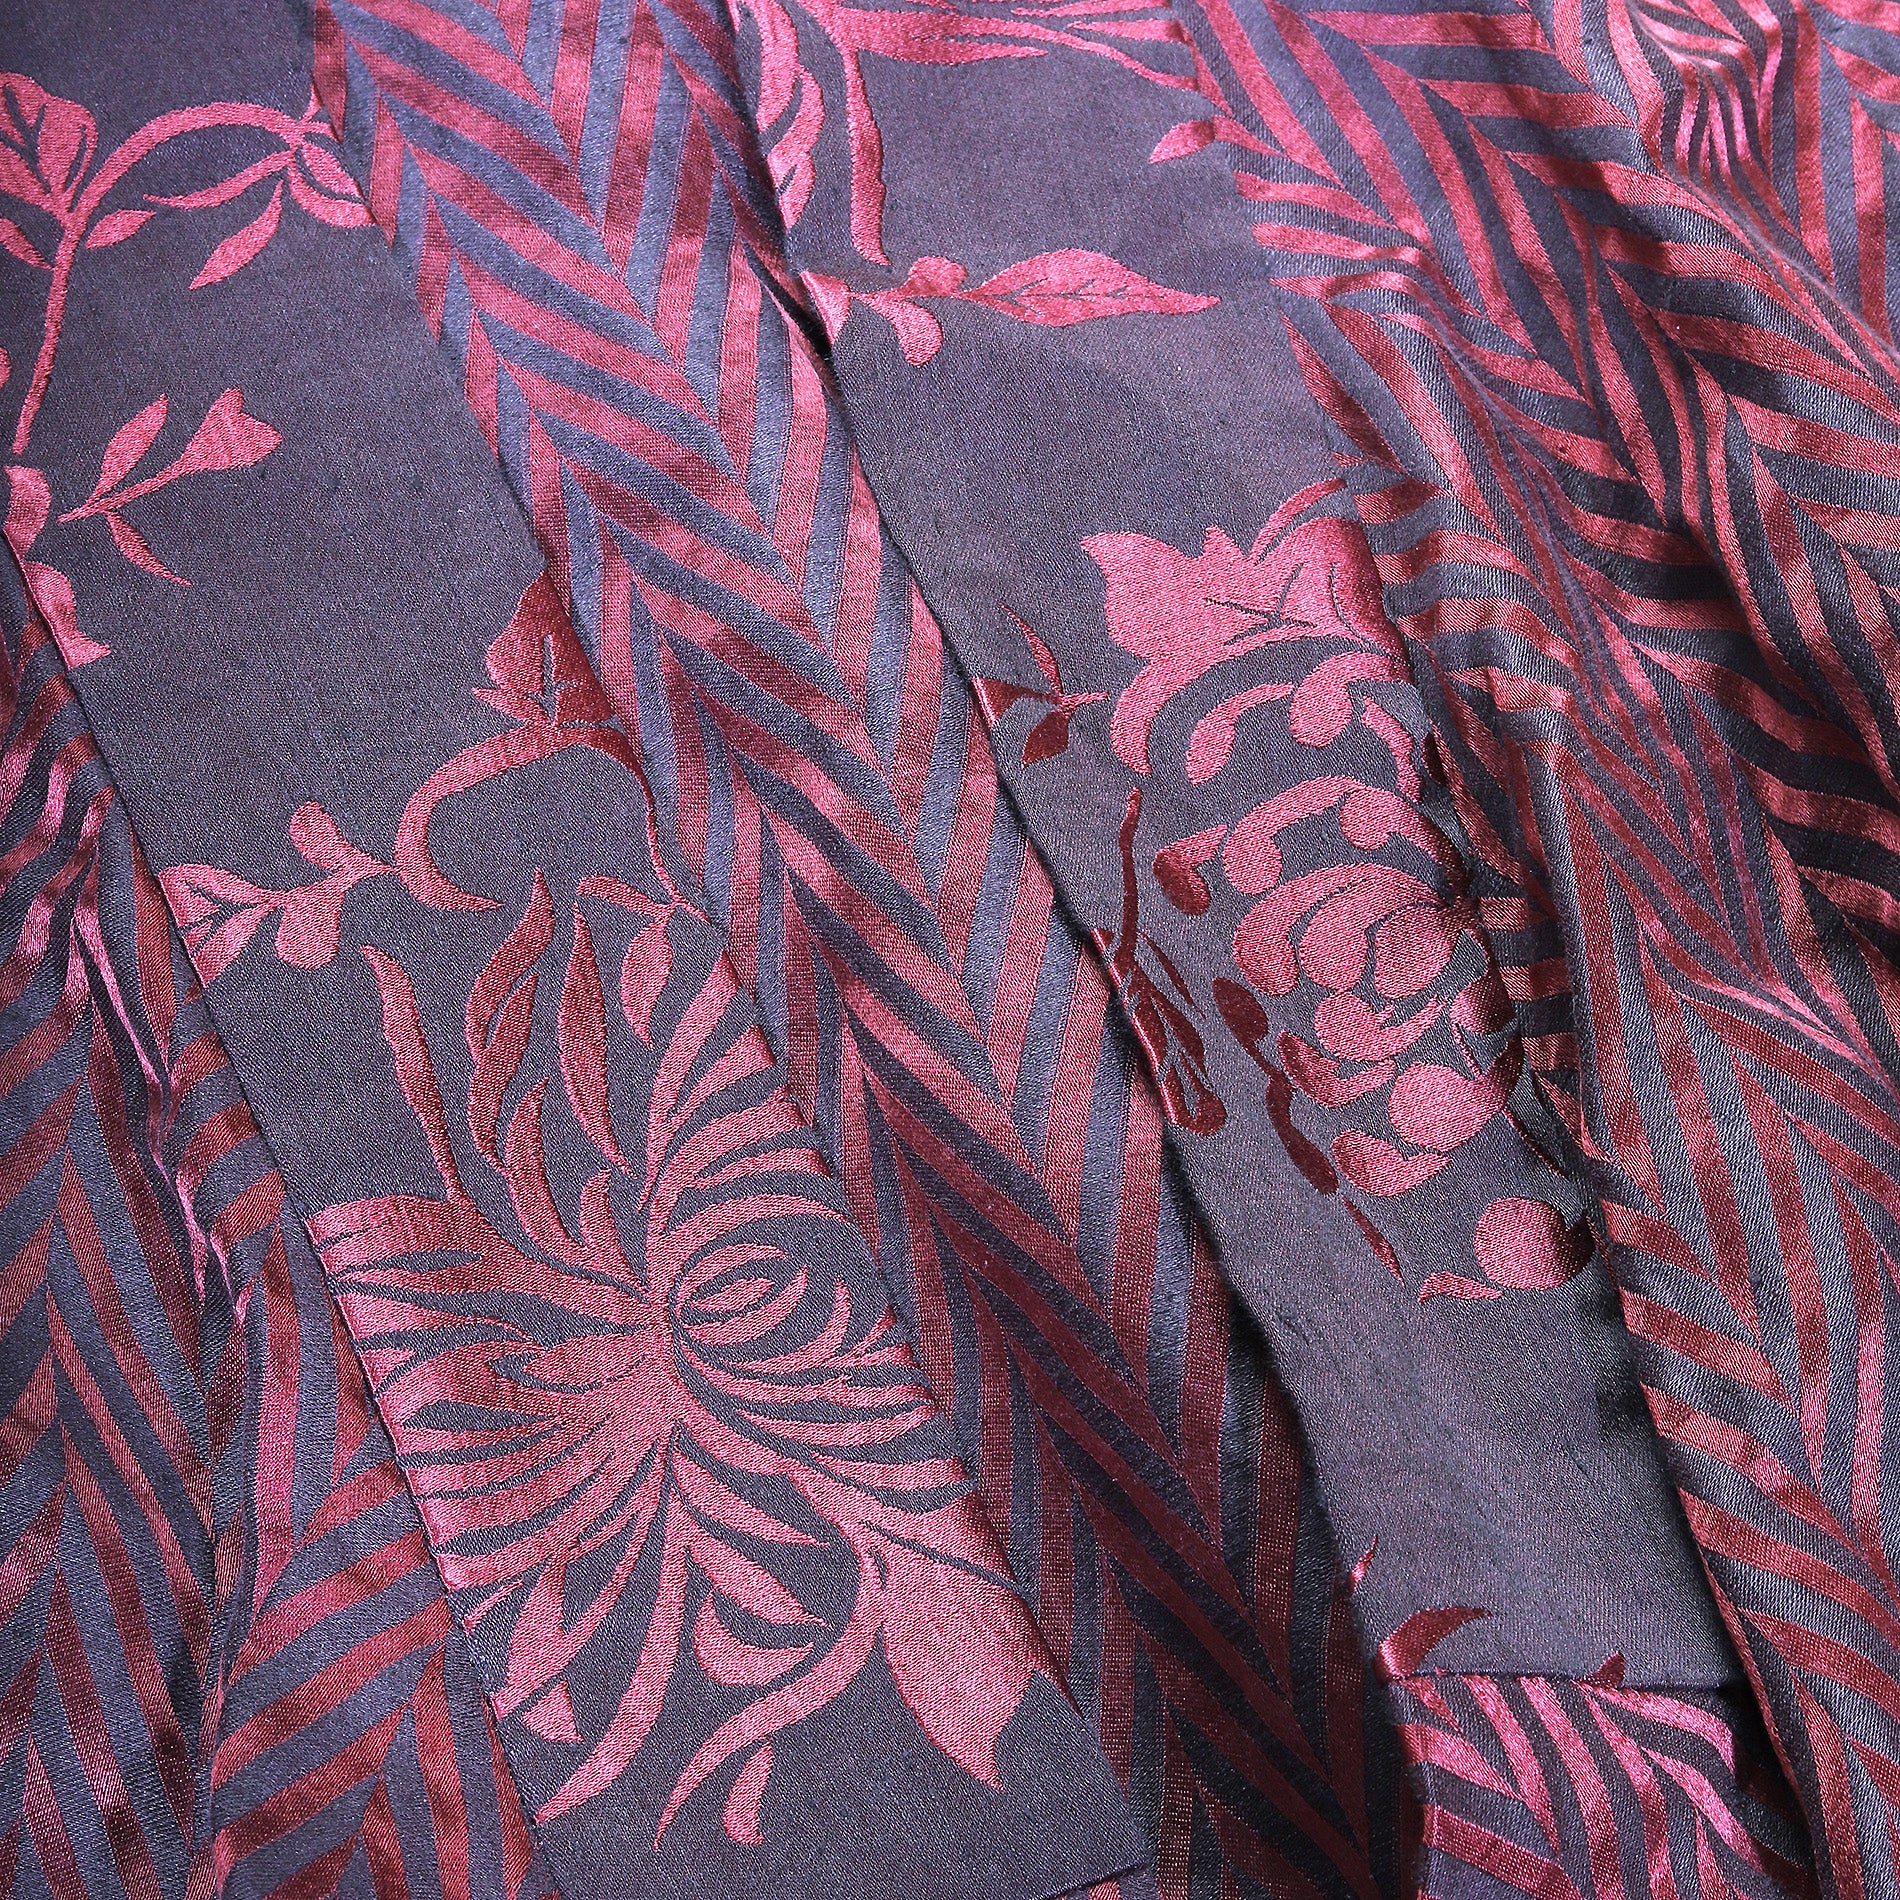 Haider Ackermann SS15 Chevron Linen Kimono Shirt